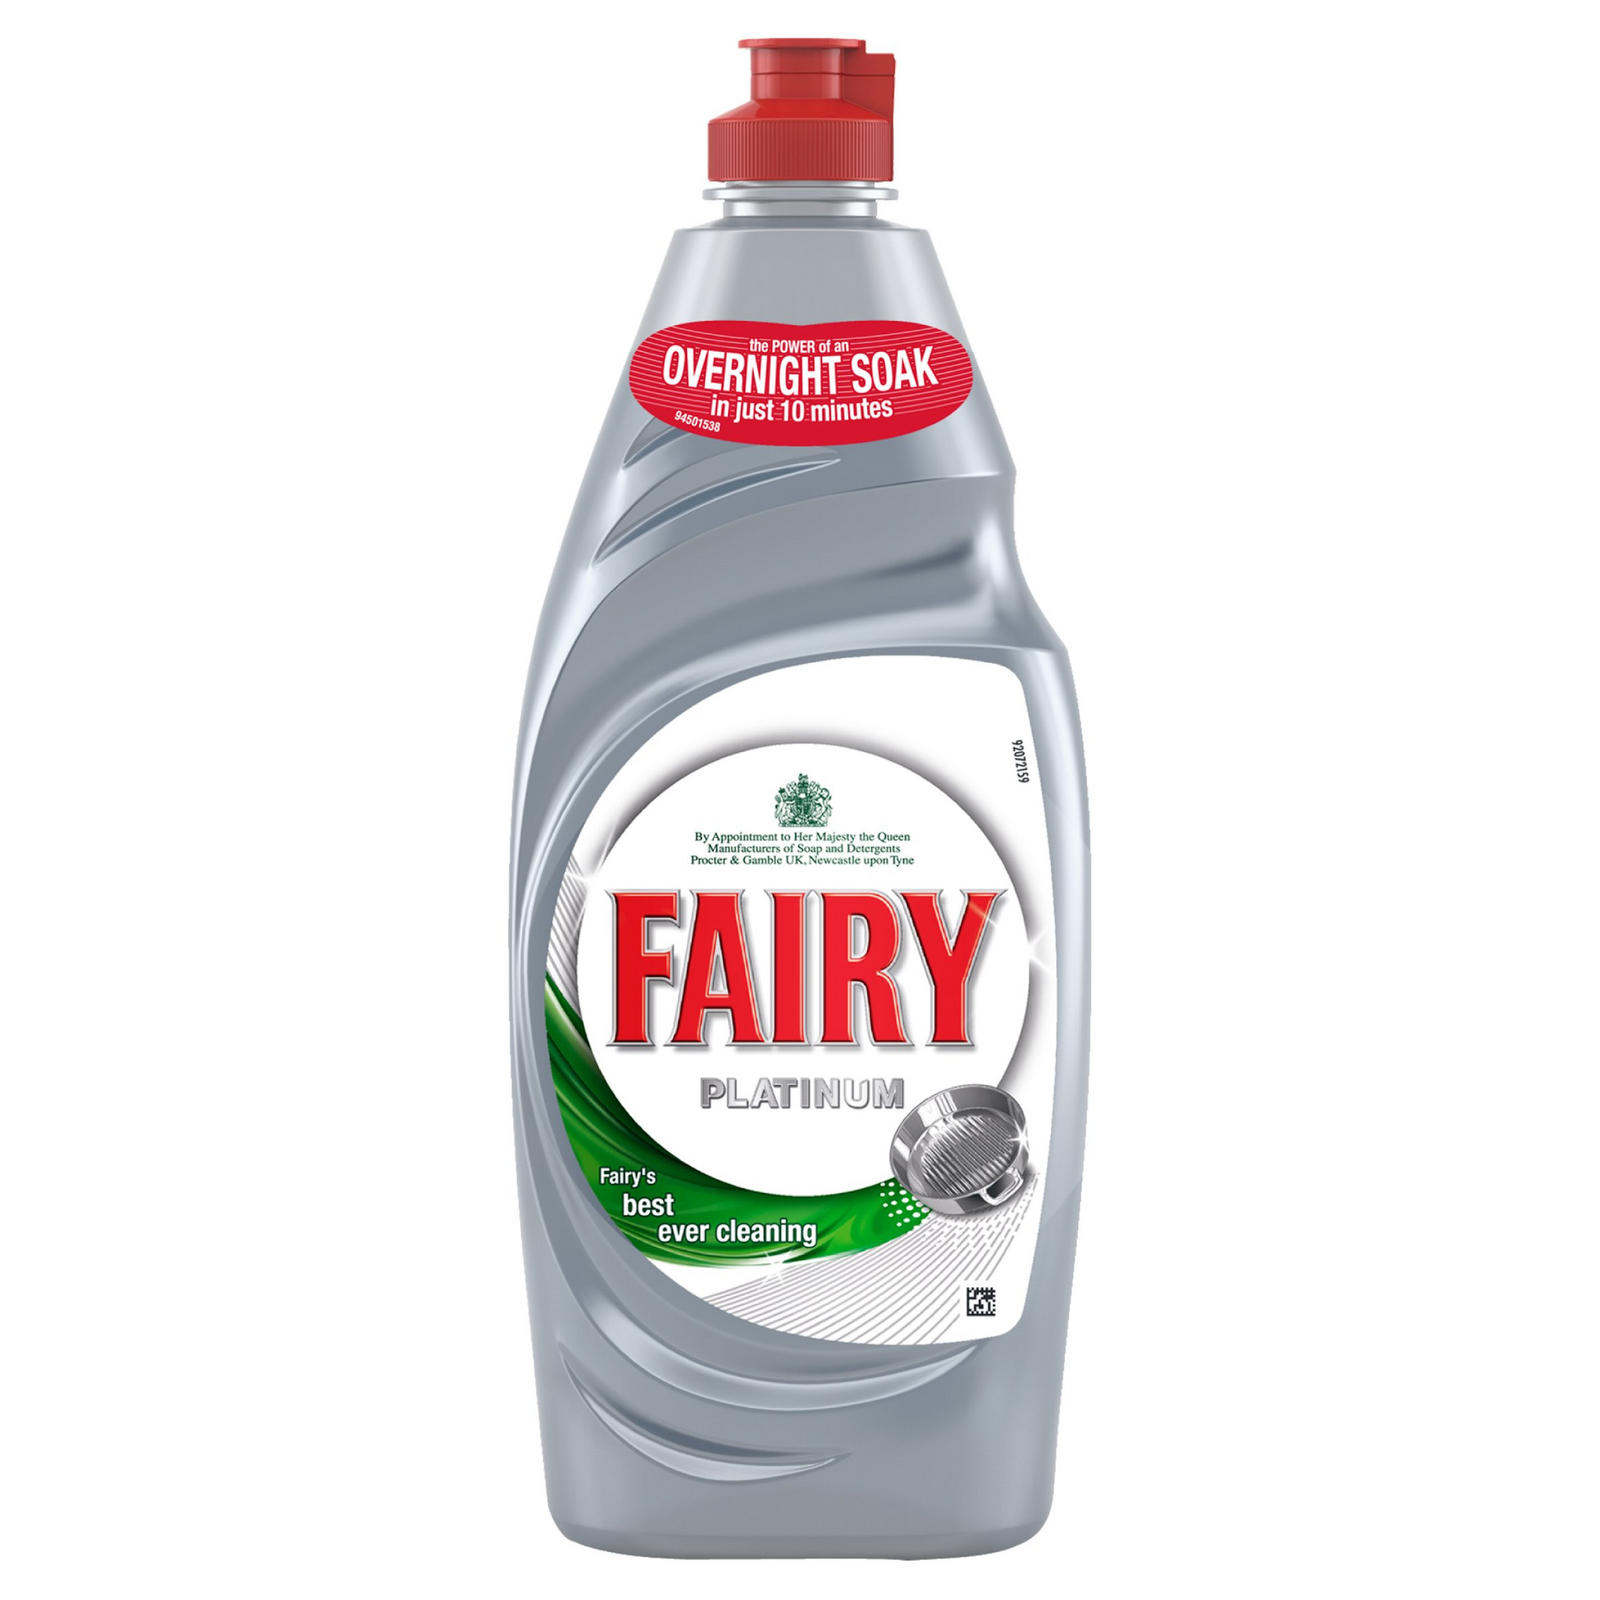 Fairy Platinum Original Washing Up Liquid 625ml, Washing Up & Dishwasher  Tablets